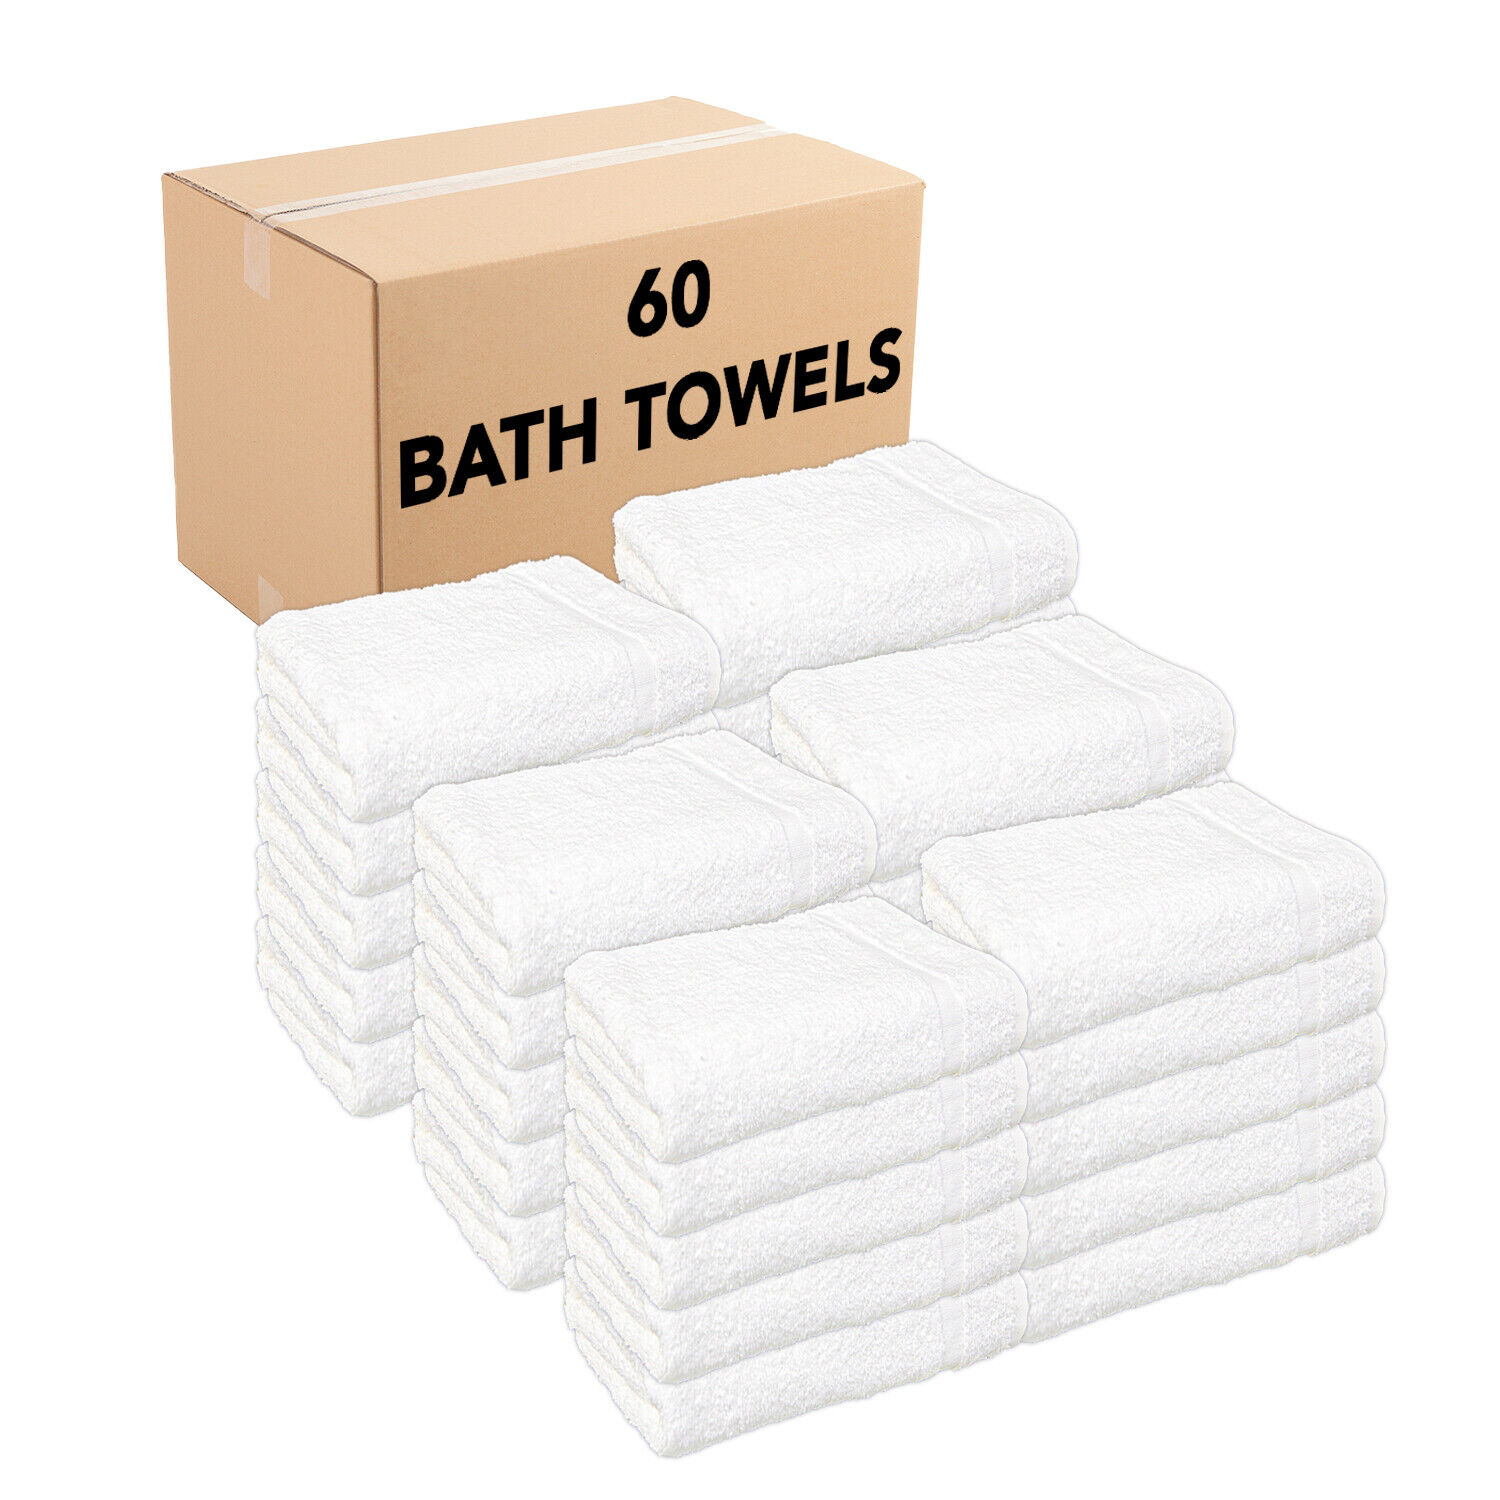 Bulk Case Of 60 Cotton Bath Towels - White Bathroom Wholesale 24x48 Cam Border